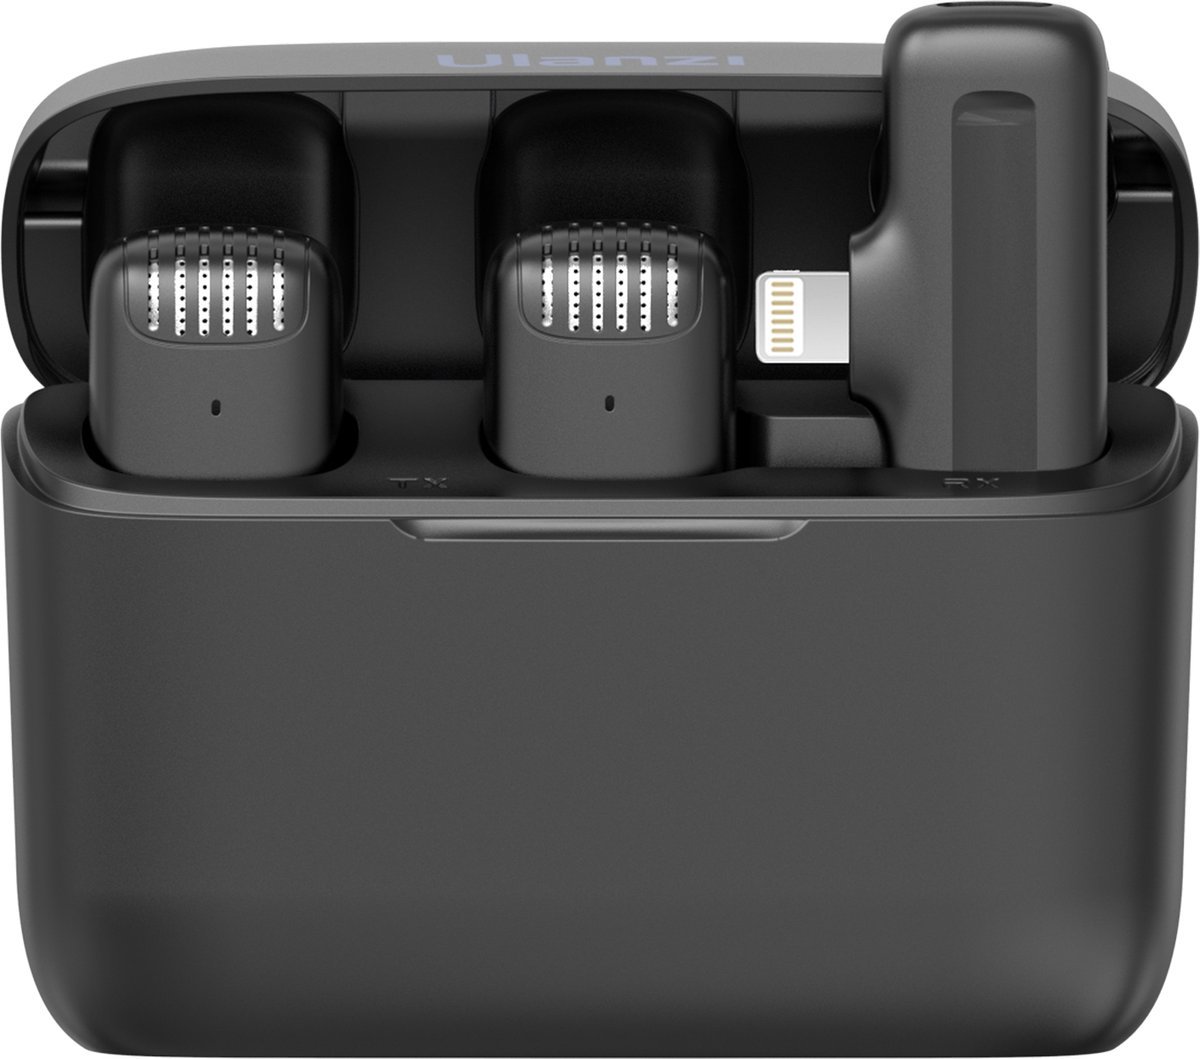 Draadloze smartphone microfoon - Lightning voor iPhone en iPad - met oplaadbox